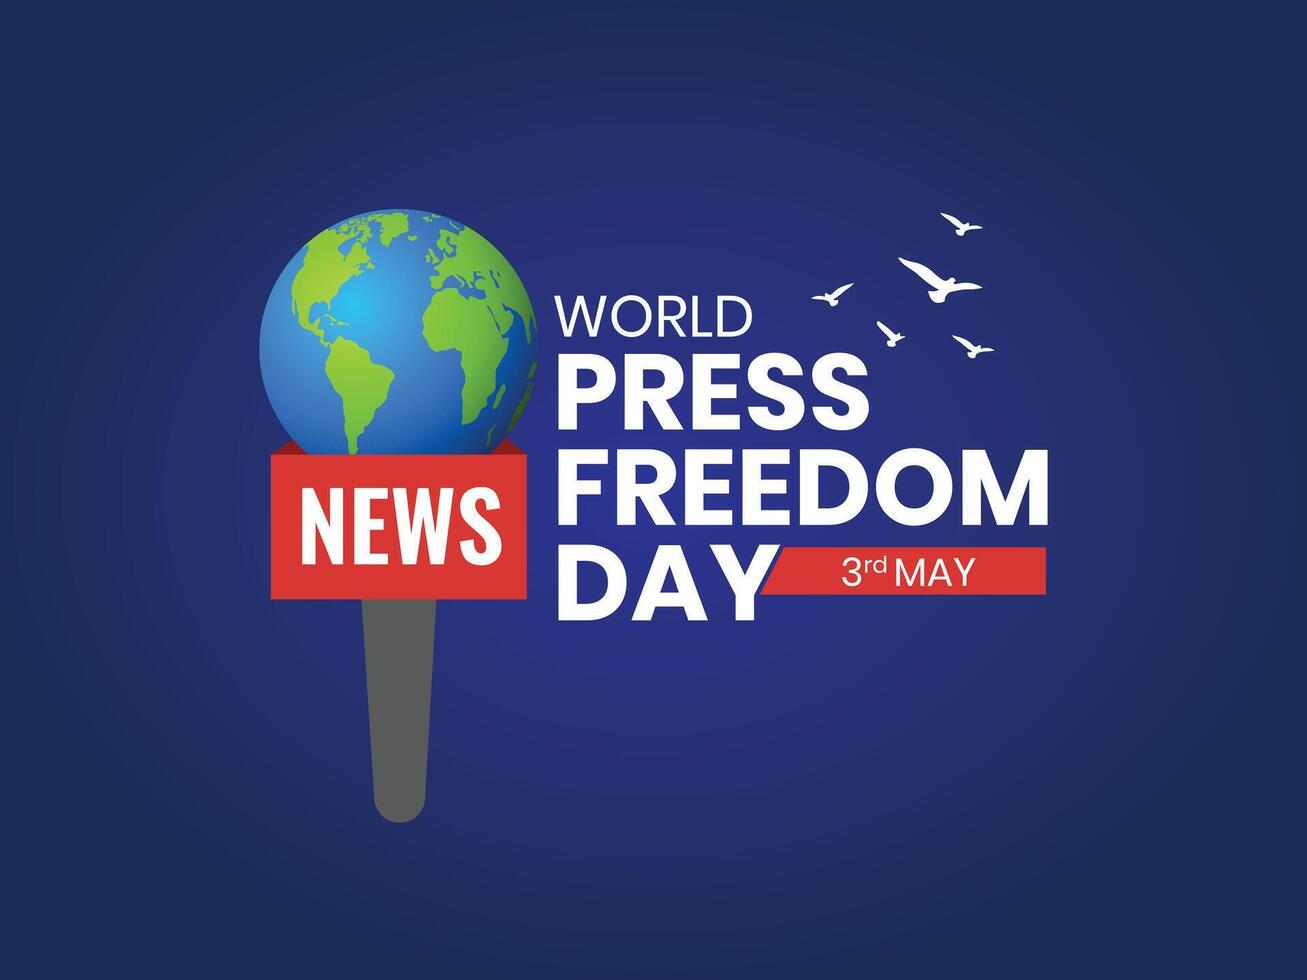 mondo stampa la libertà giorno o mondo stampa la libertà giorno o mondo stampa giorno per aumentare consapevolezza di il importanza di la libertà di il stampa. fine impunità per crimini contro giornalismo, indipendente di media vettore